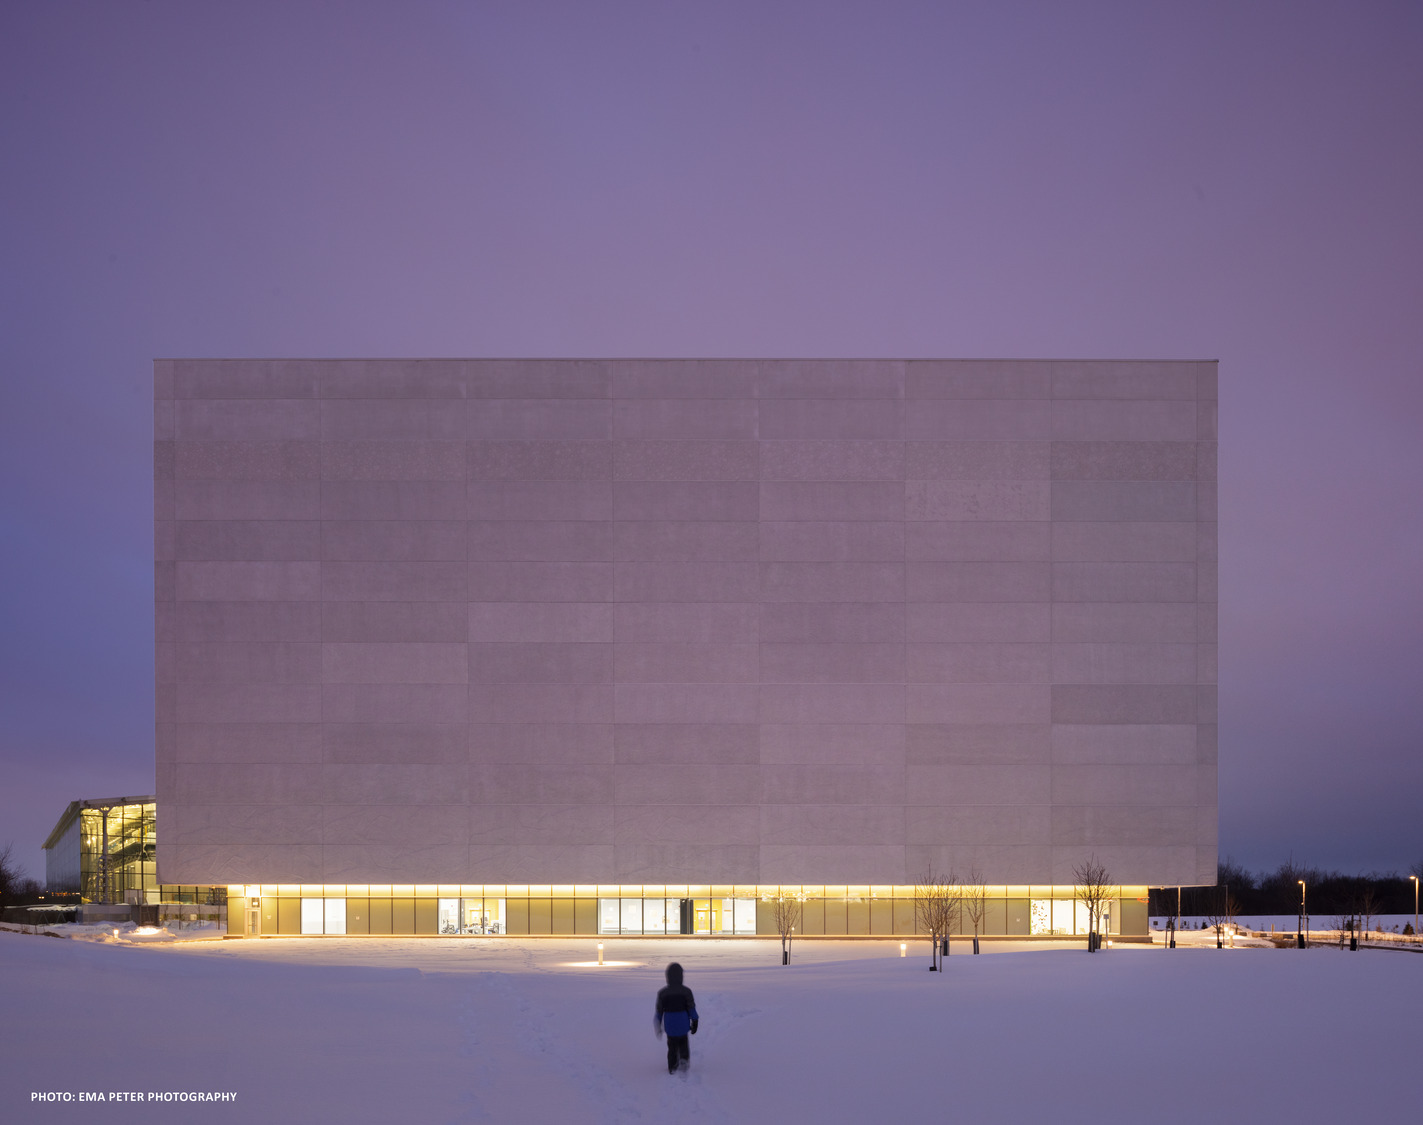 Une personne marchant vers un grand bâtiment moderne éclairé avec une façade plate lors d'une soirée enneigée.